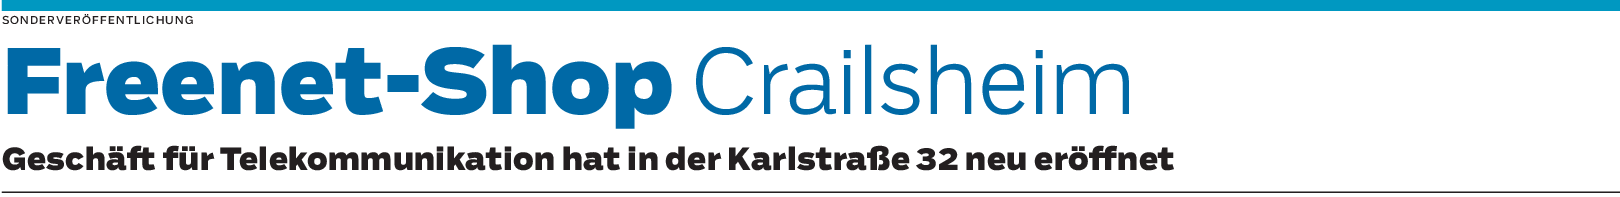 Freenet-Shop Crailsheim: Alle Anbieter unter einem Dach vereint